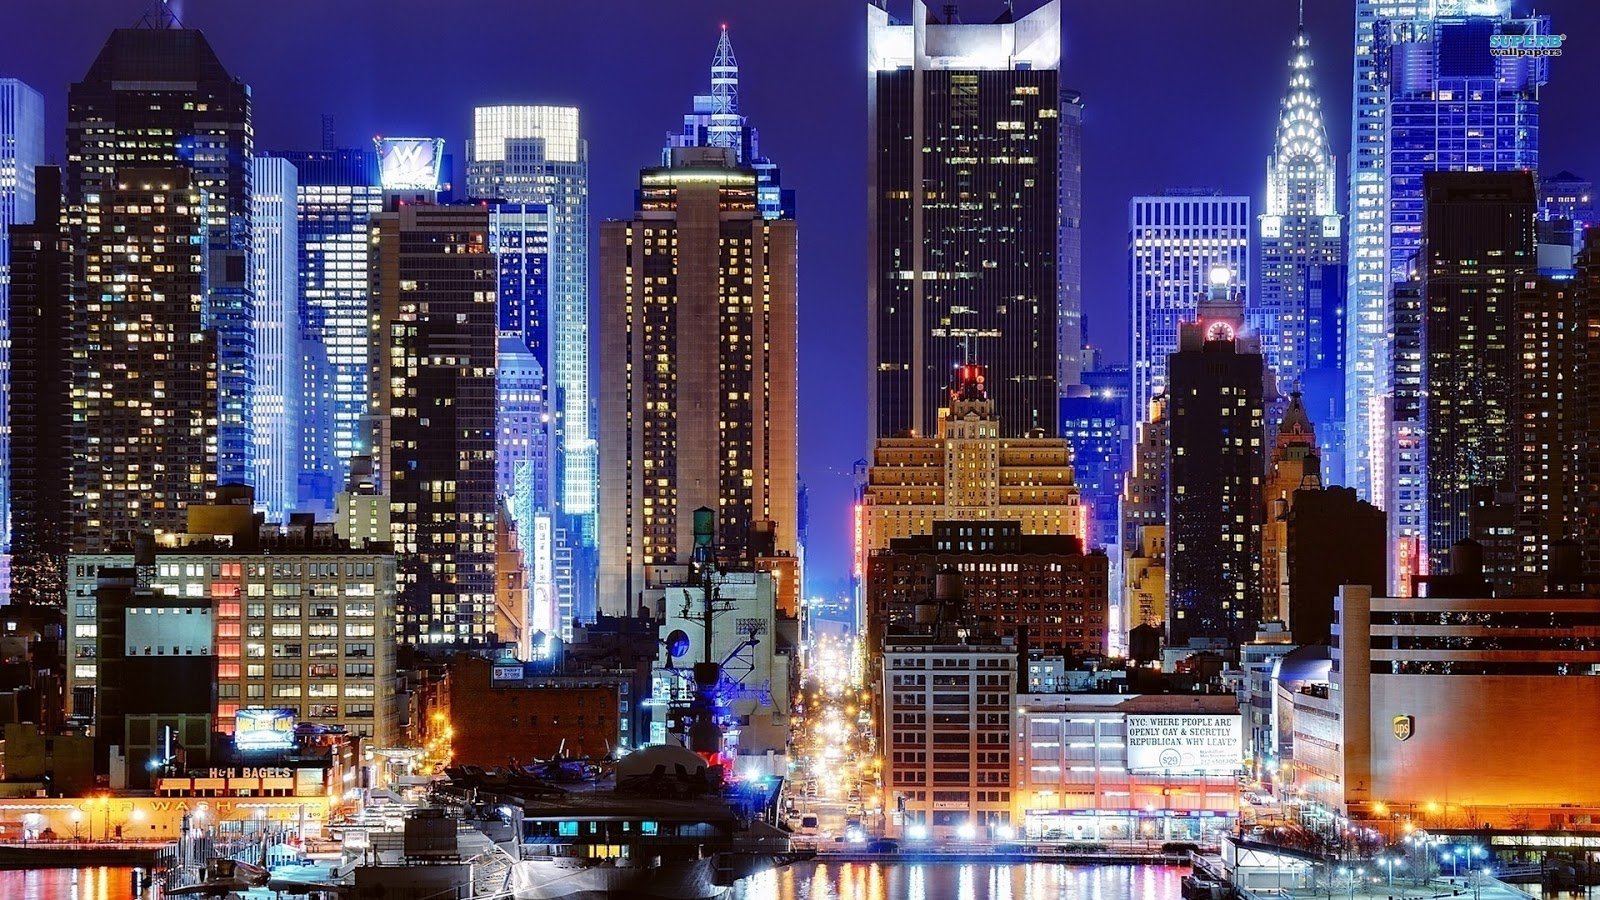 New york city at night HD wallpaper Download 1080p